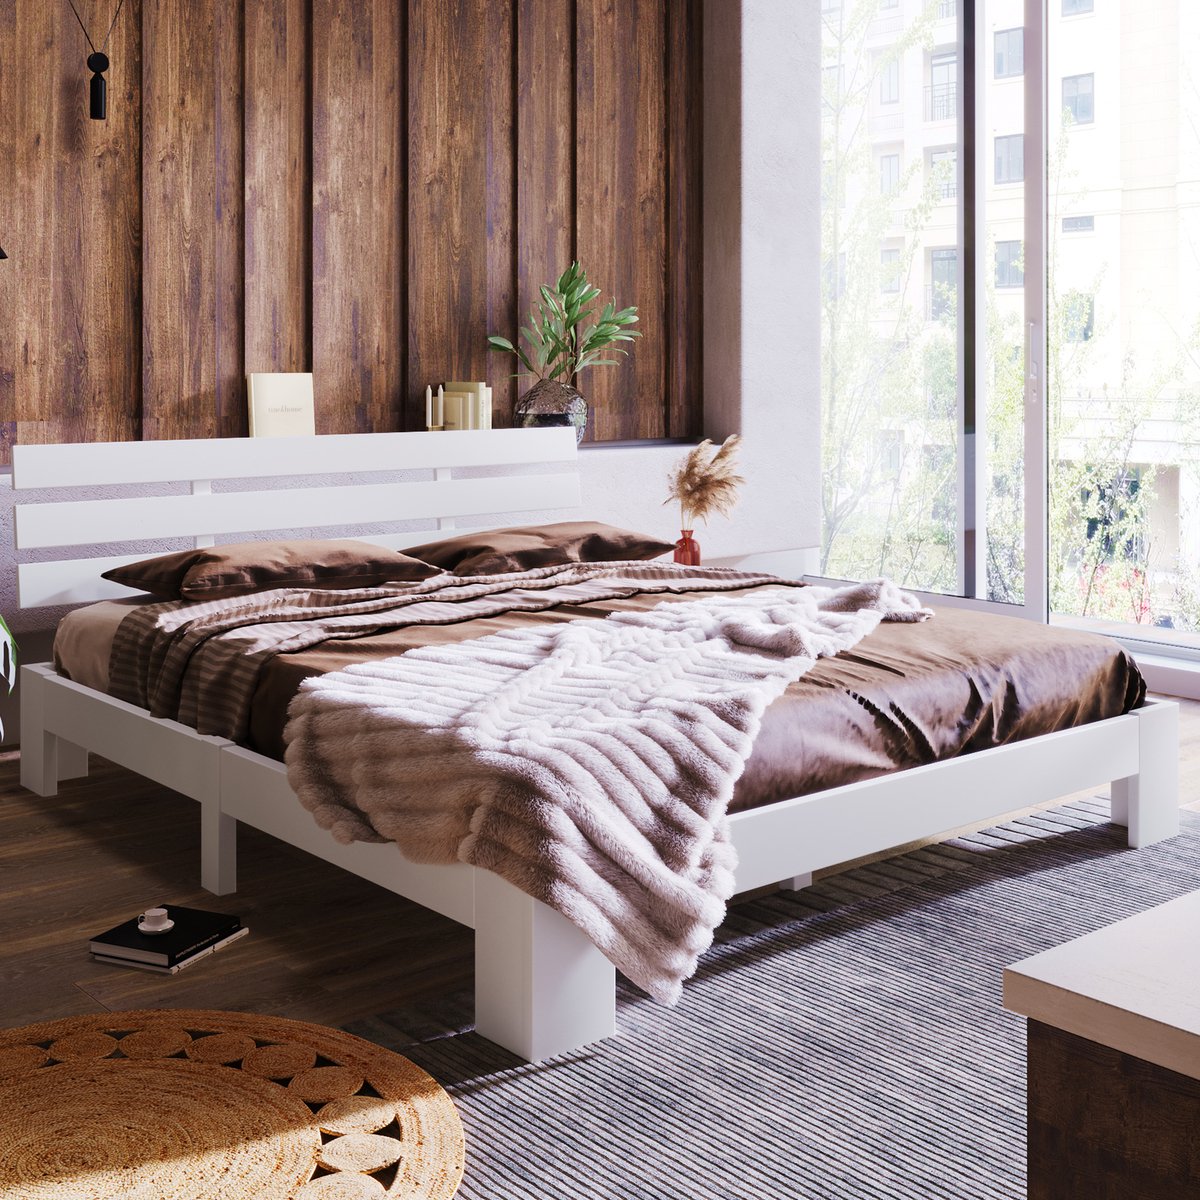 200 x 140 cm Houten bed tweepersoonsbed lattenbodem met hoofdeinde - FSC Hard Wood grenen massief tweepersoonsbed -wit